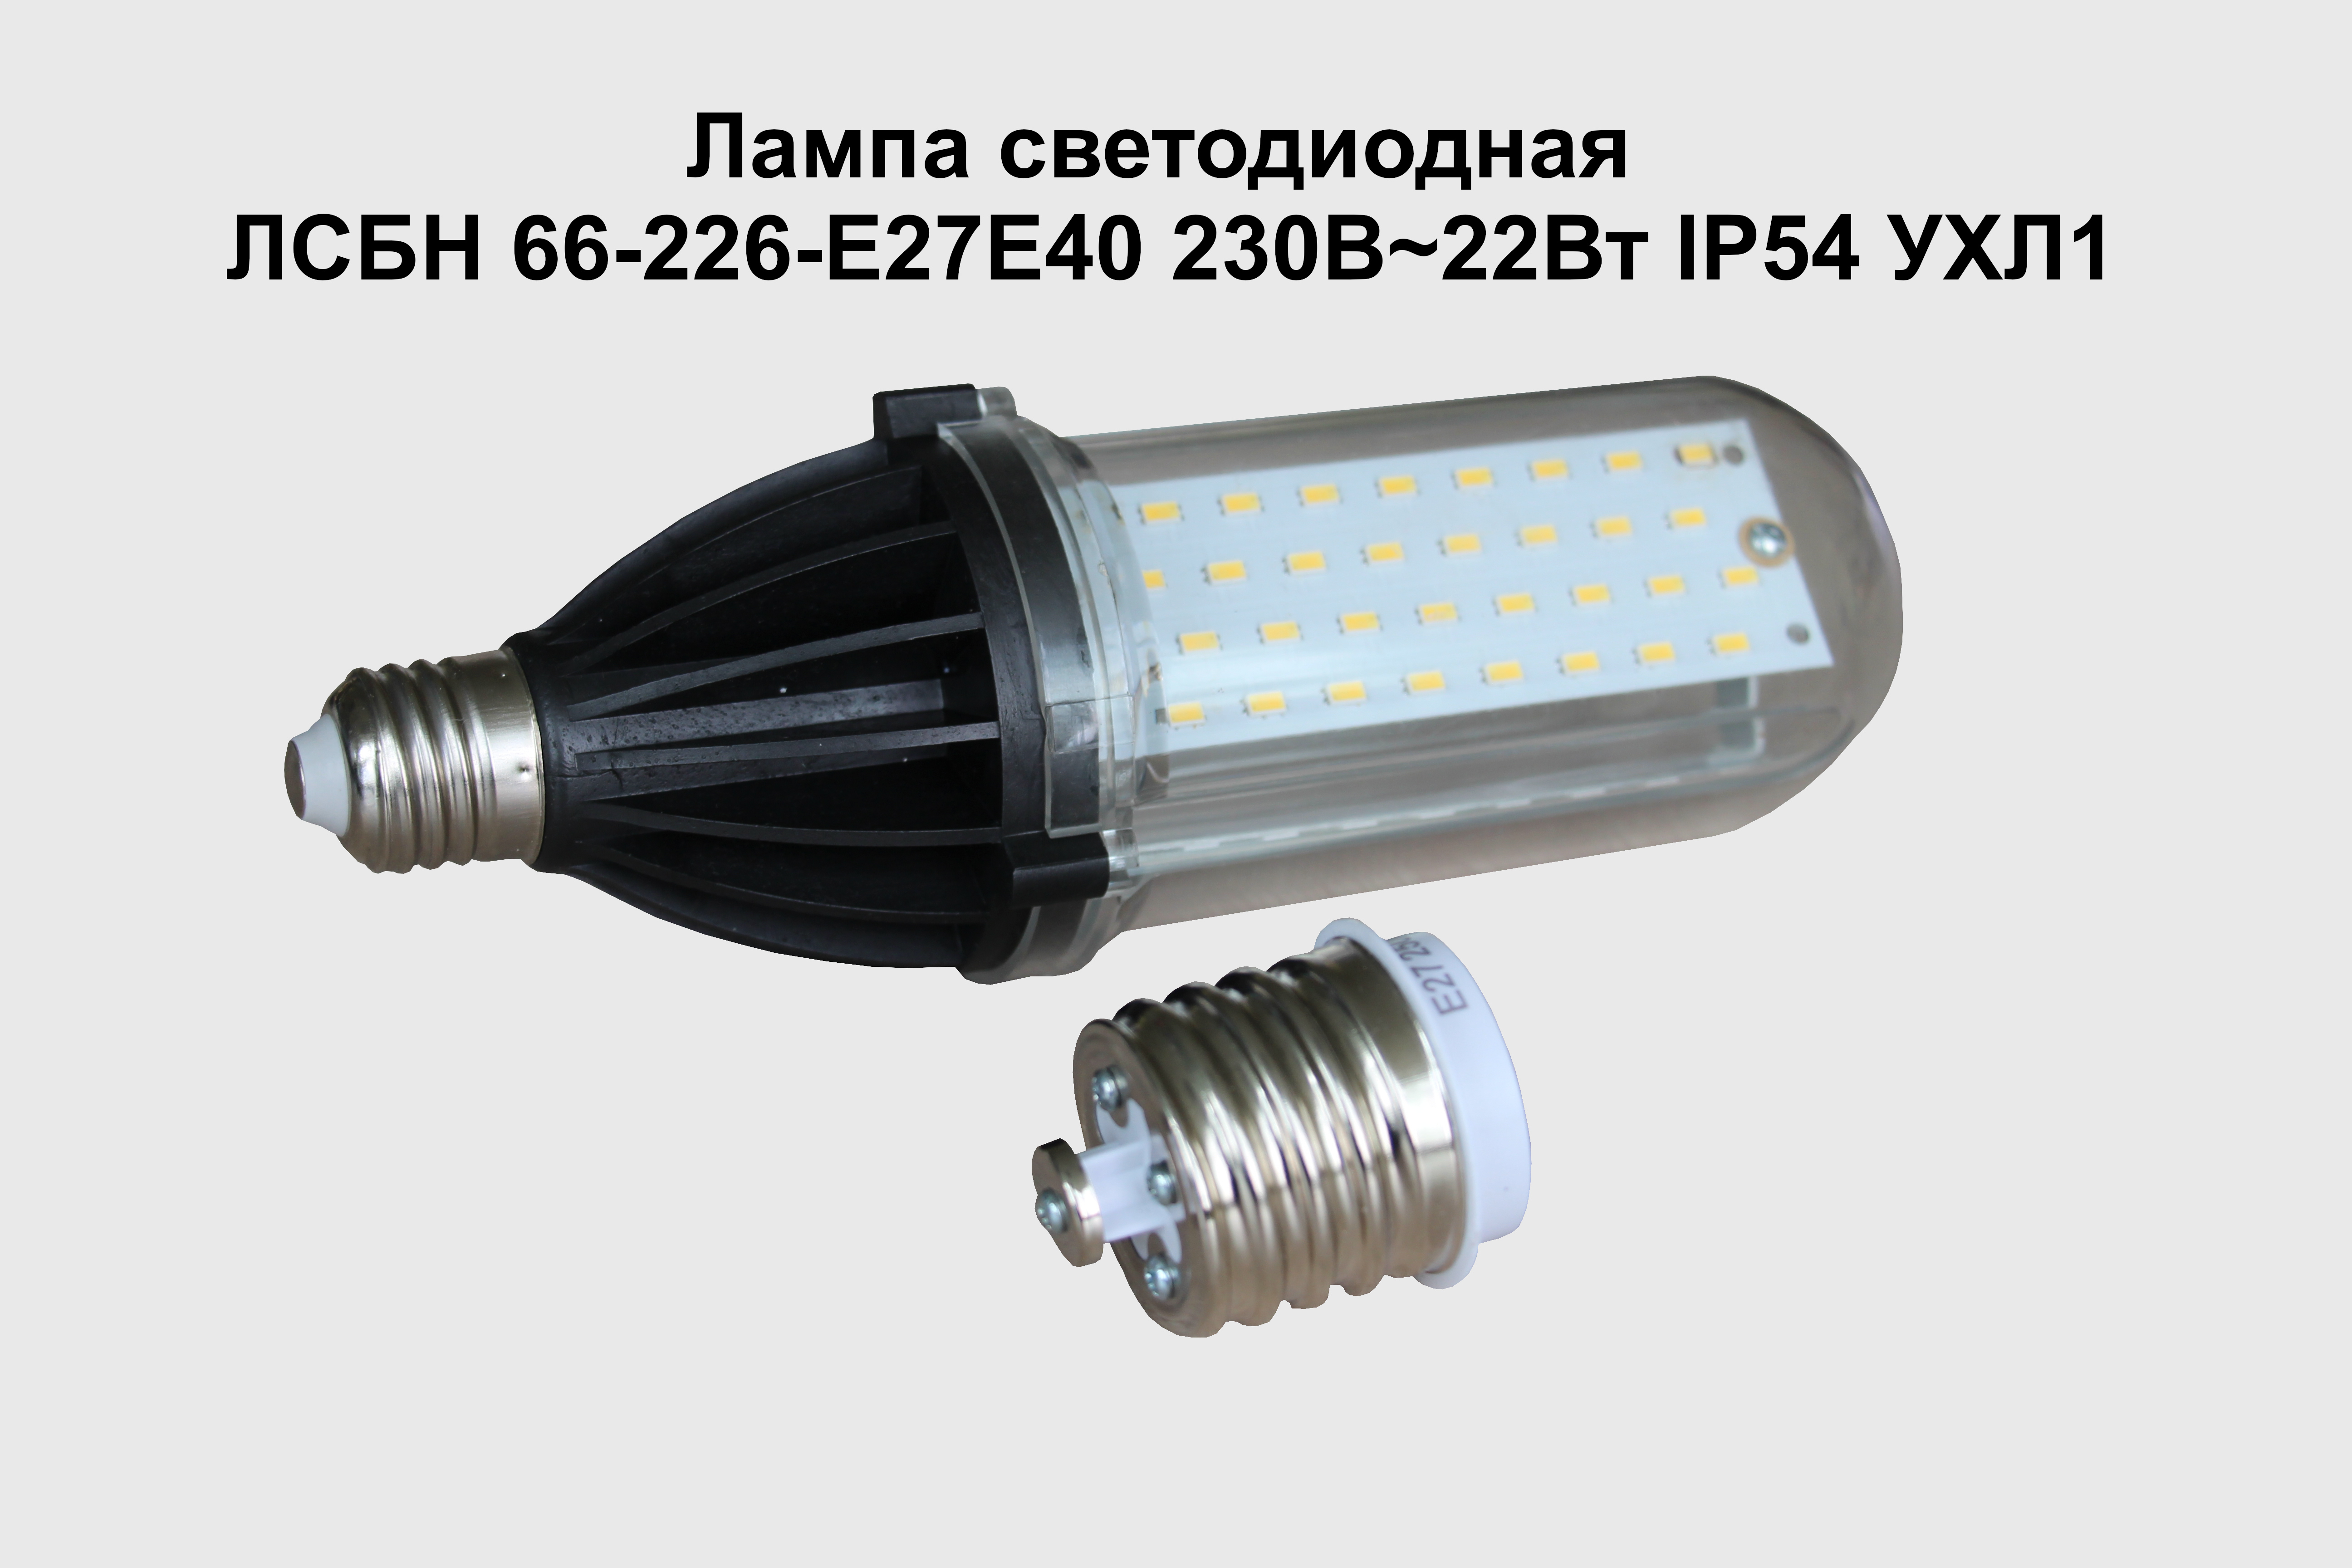 Новая импортозамещающая продукция ОАО «Зенит» -   лампа светодиодная ЛСБН 66-226-Е27/E40 230В~22Вт IP54 УХЛ1